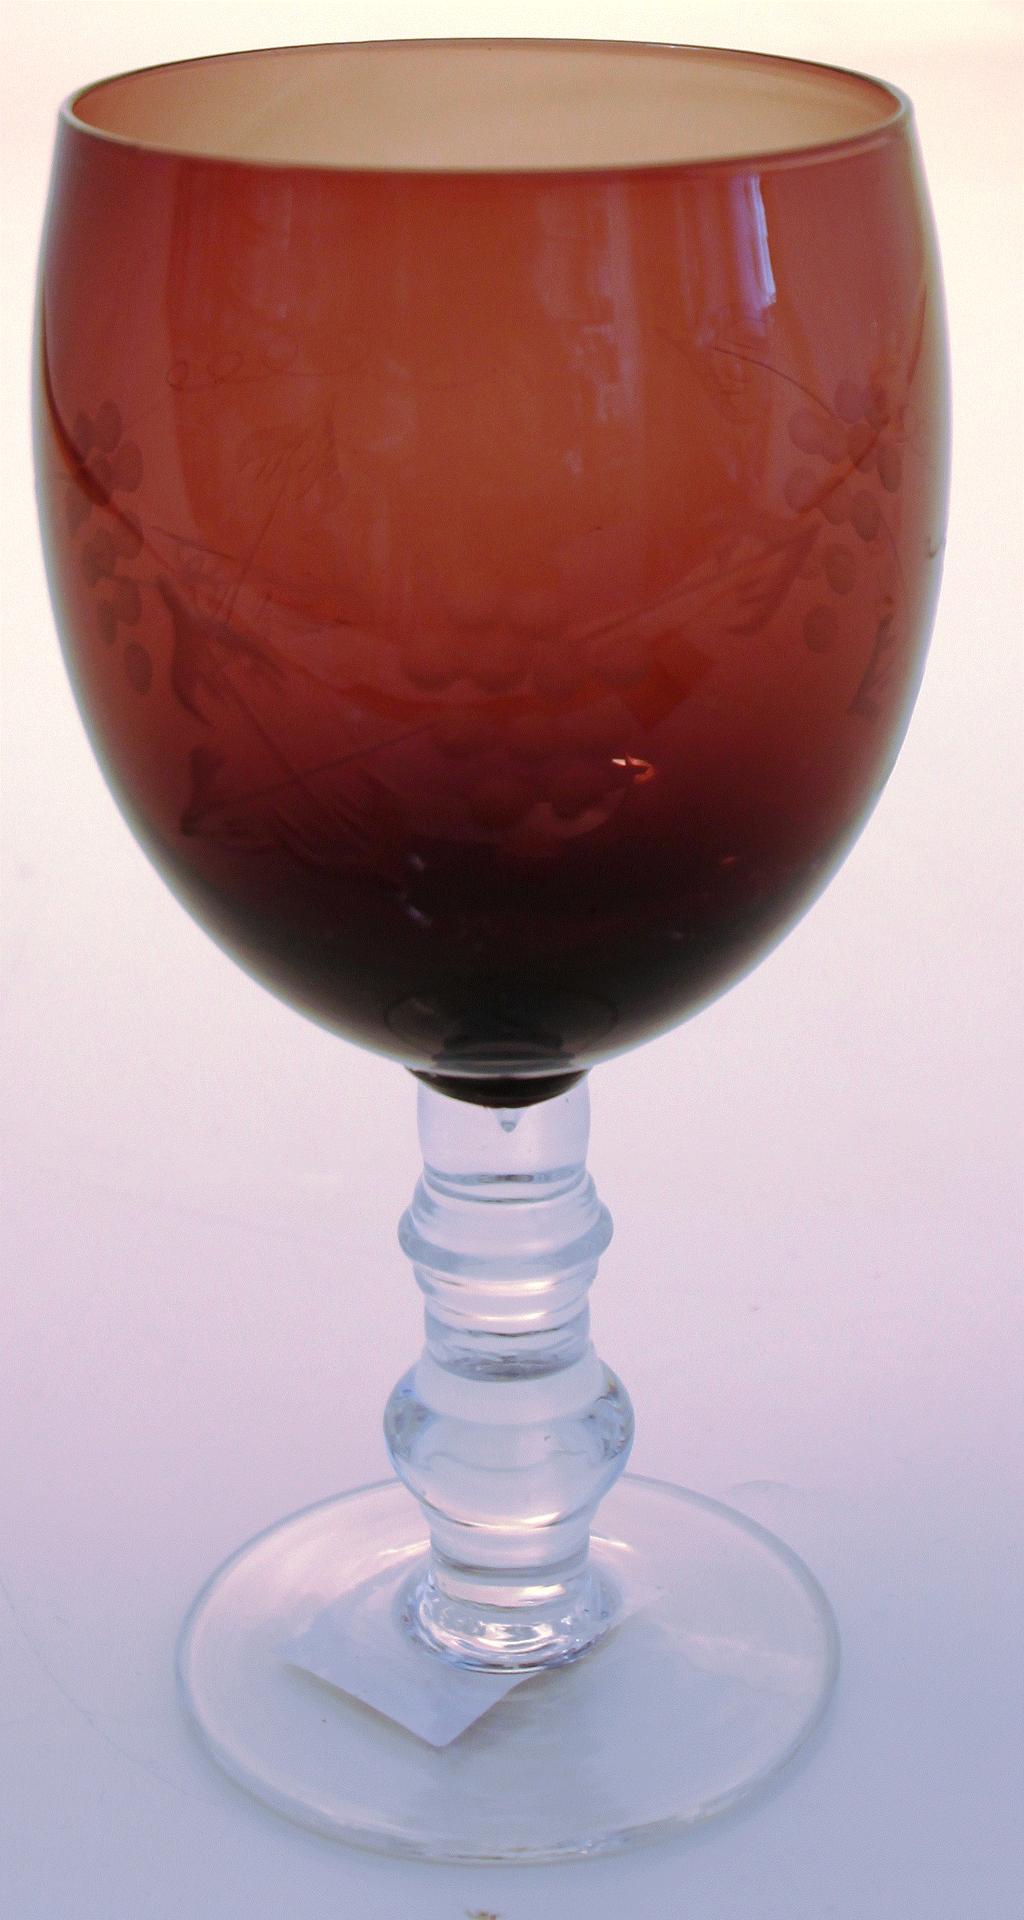 rødvinsglas 16,5cm 1365: Grapes lyserød rødvinsglas